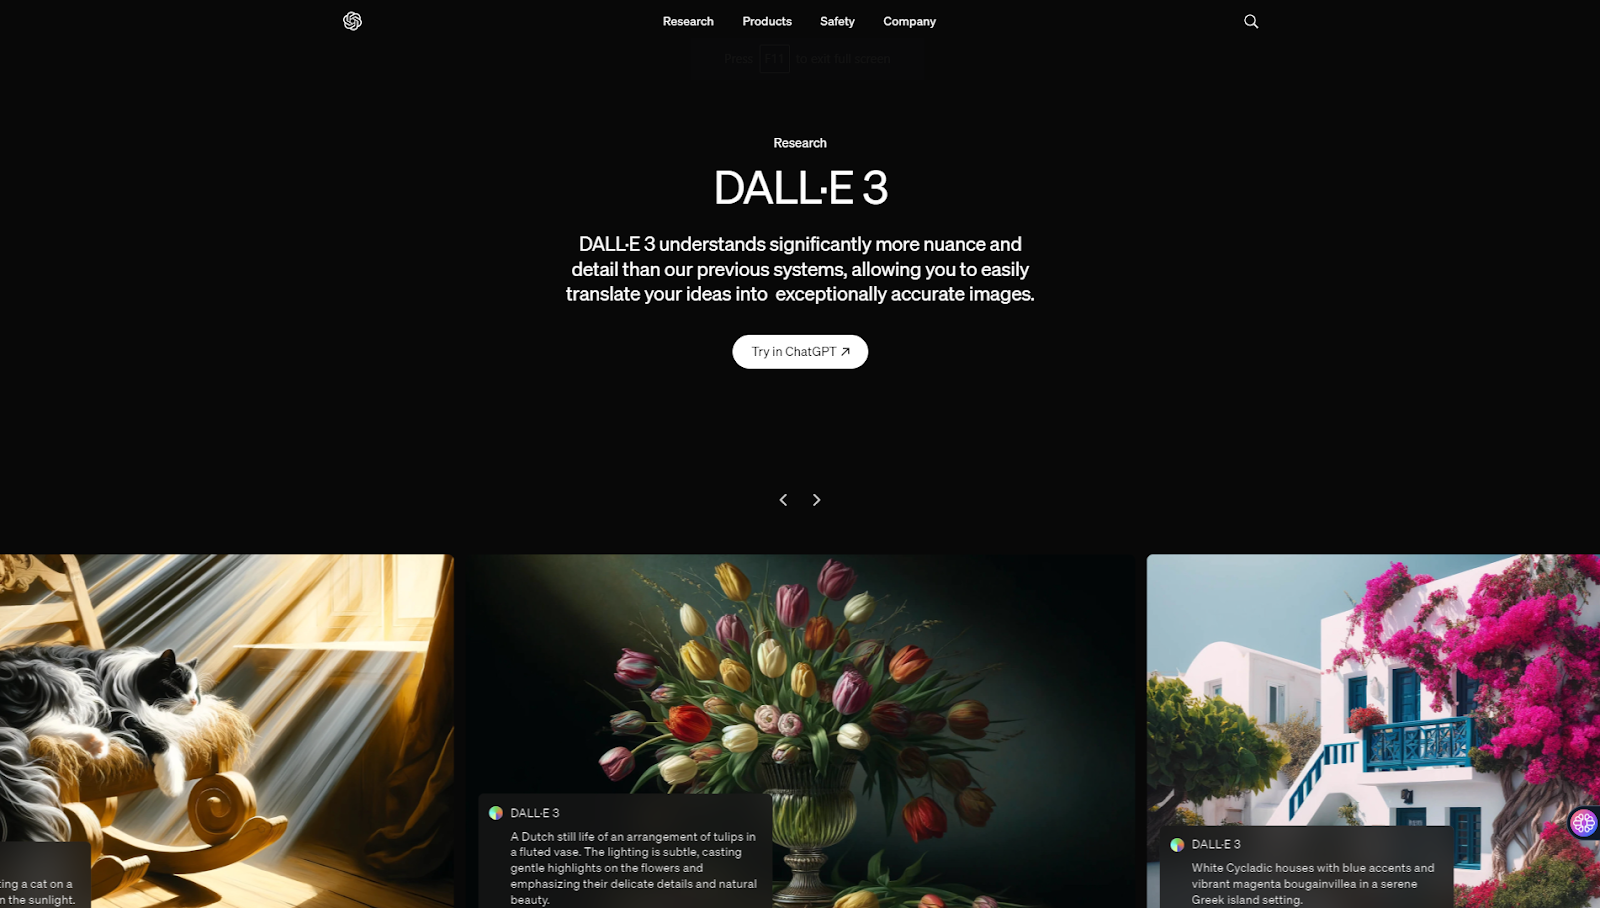 Dalle 3 by OpenAI